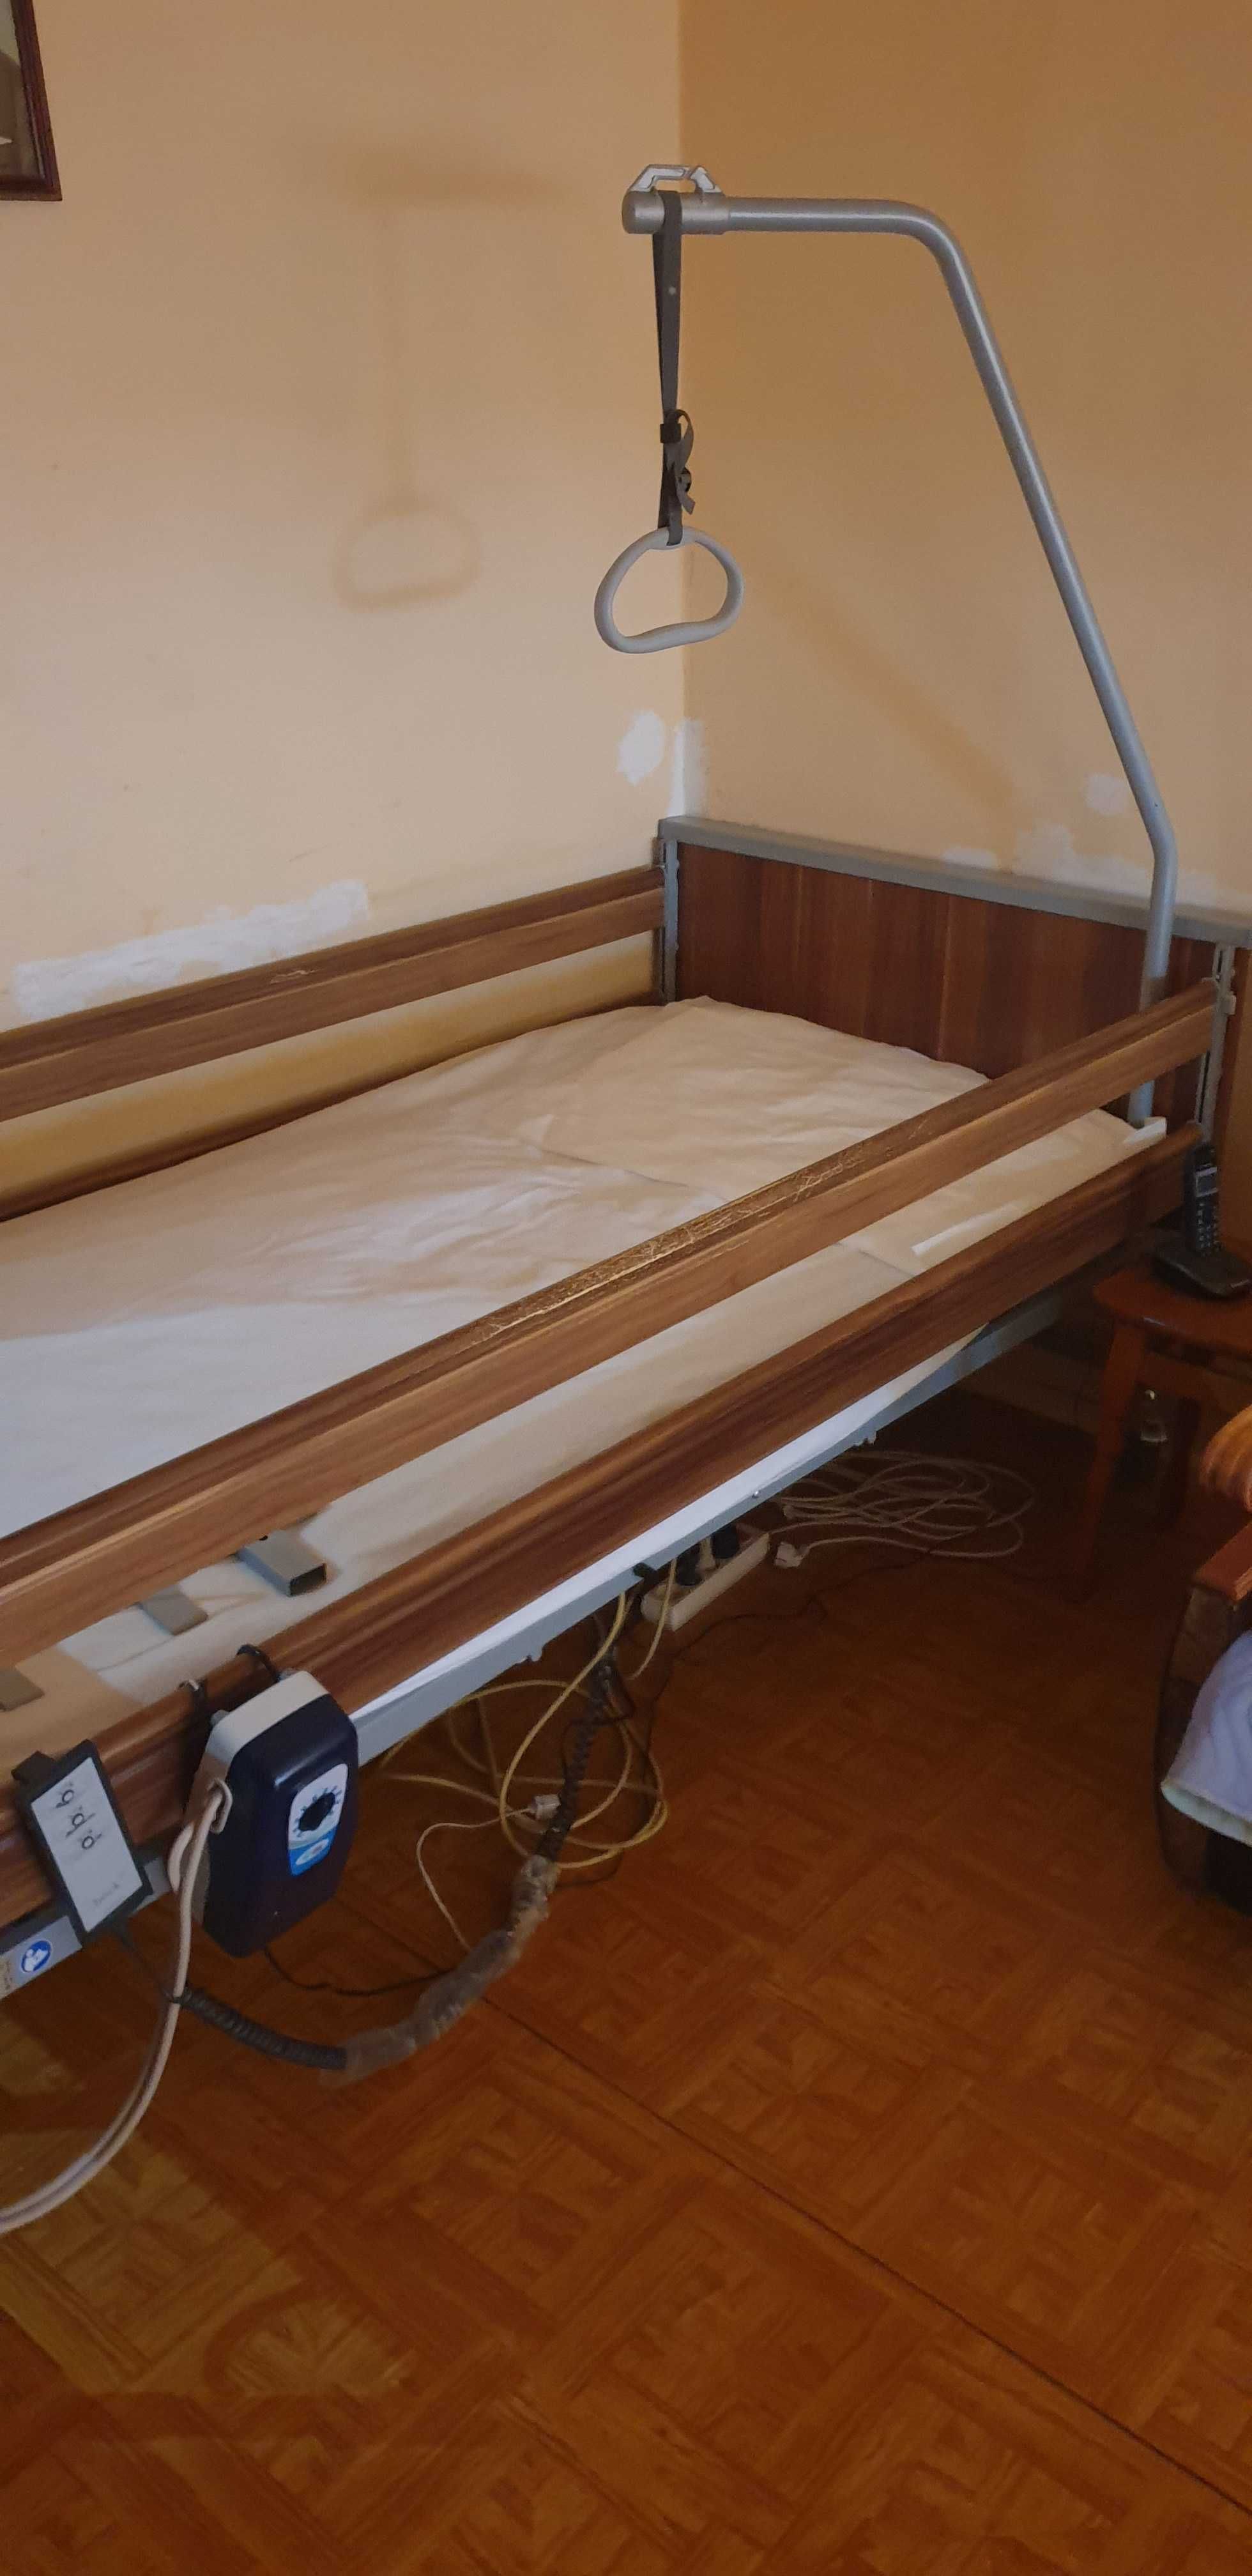 Łóżko rehabilitacyjne Domiflex